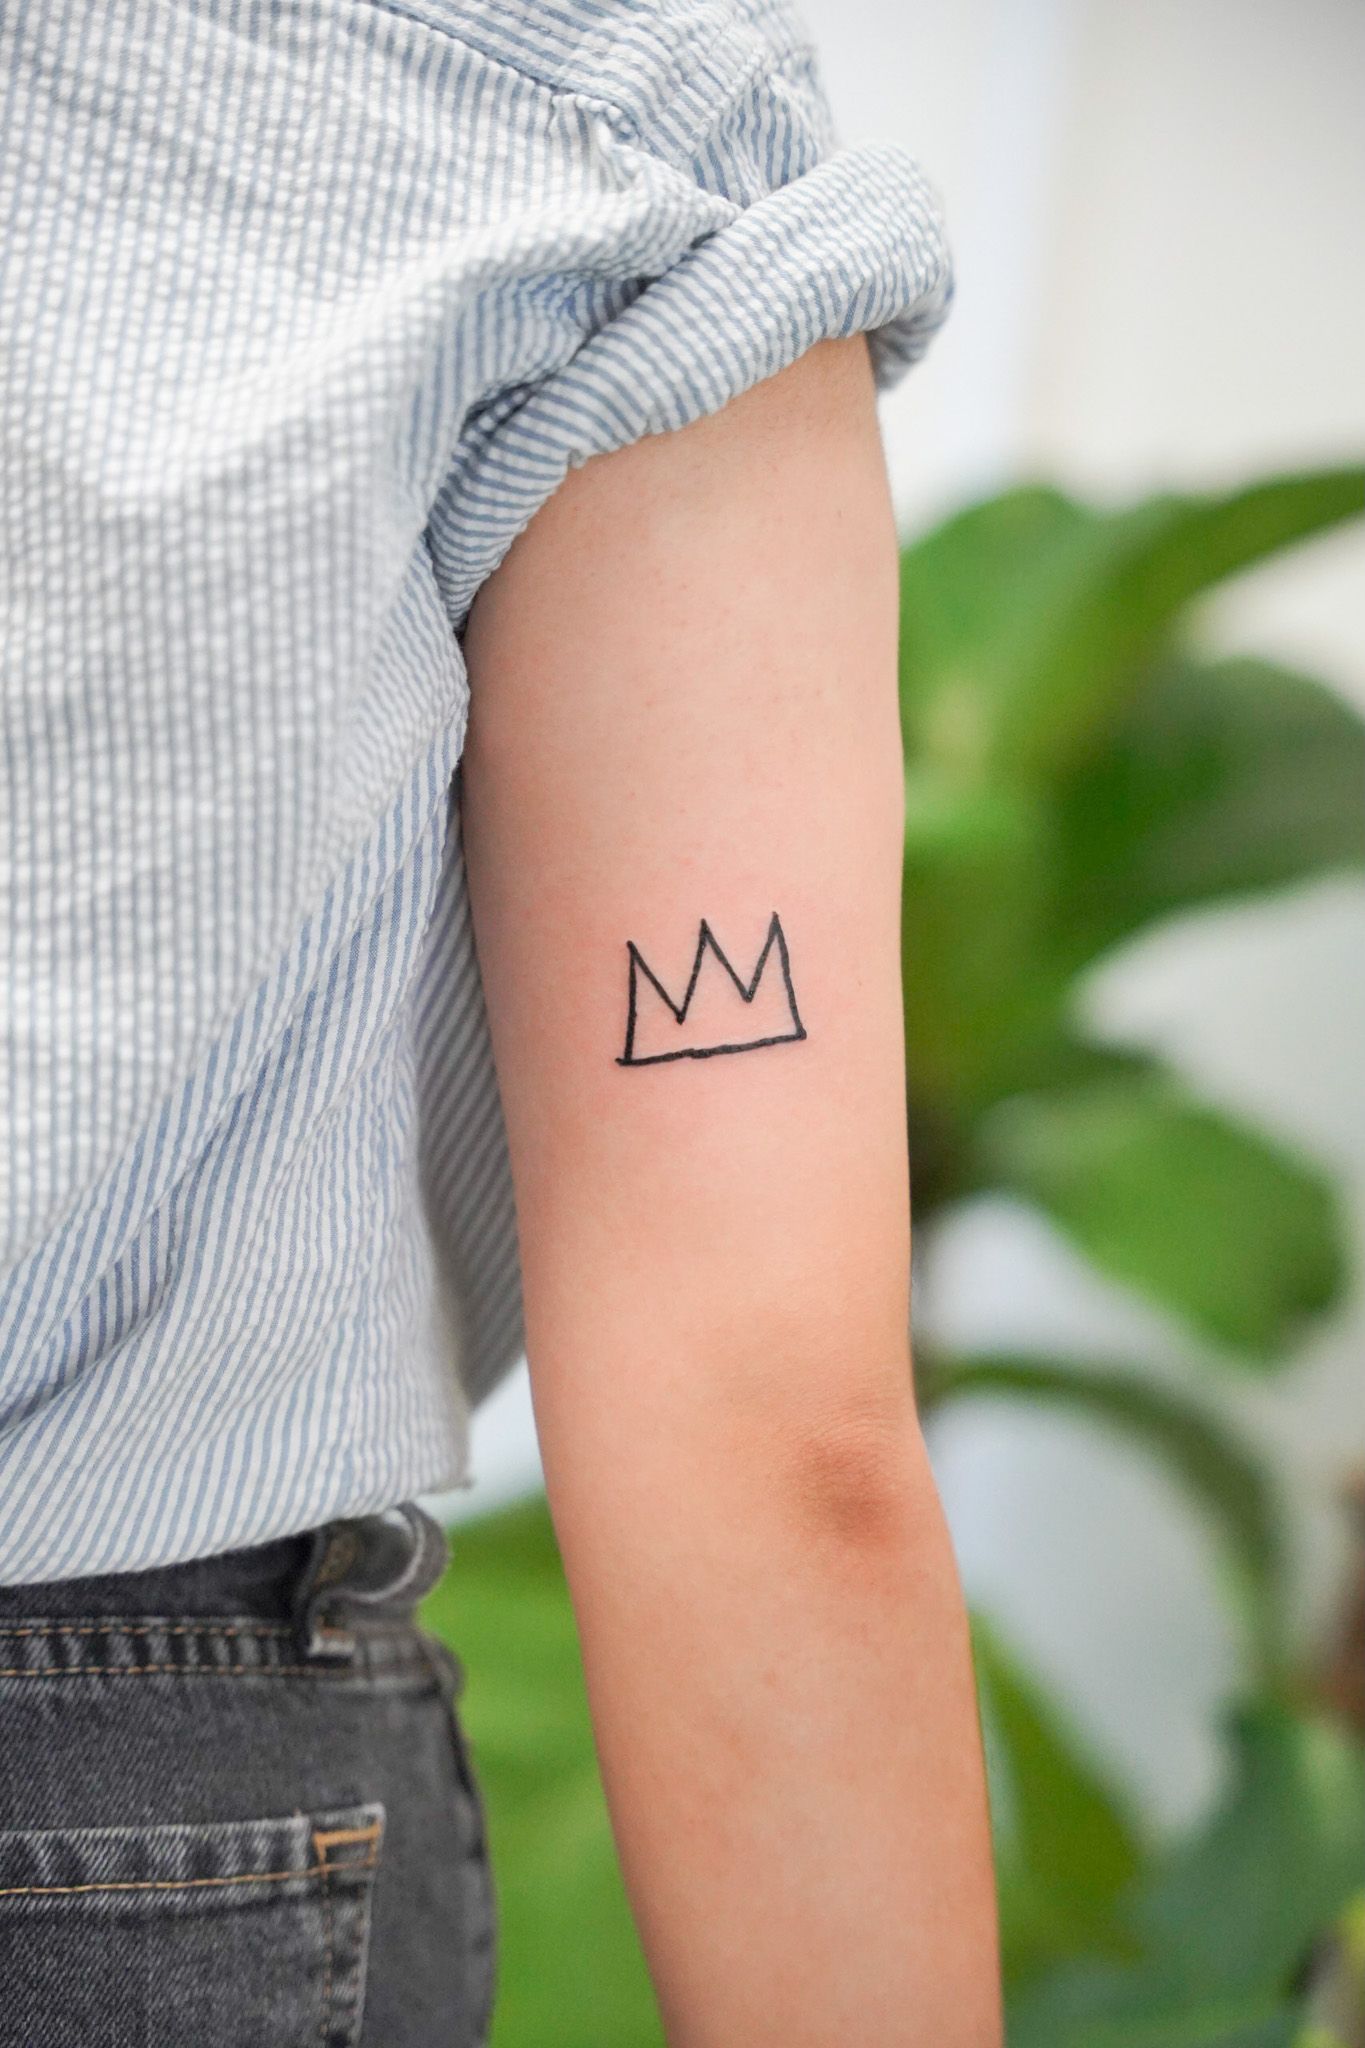 crown tattoo